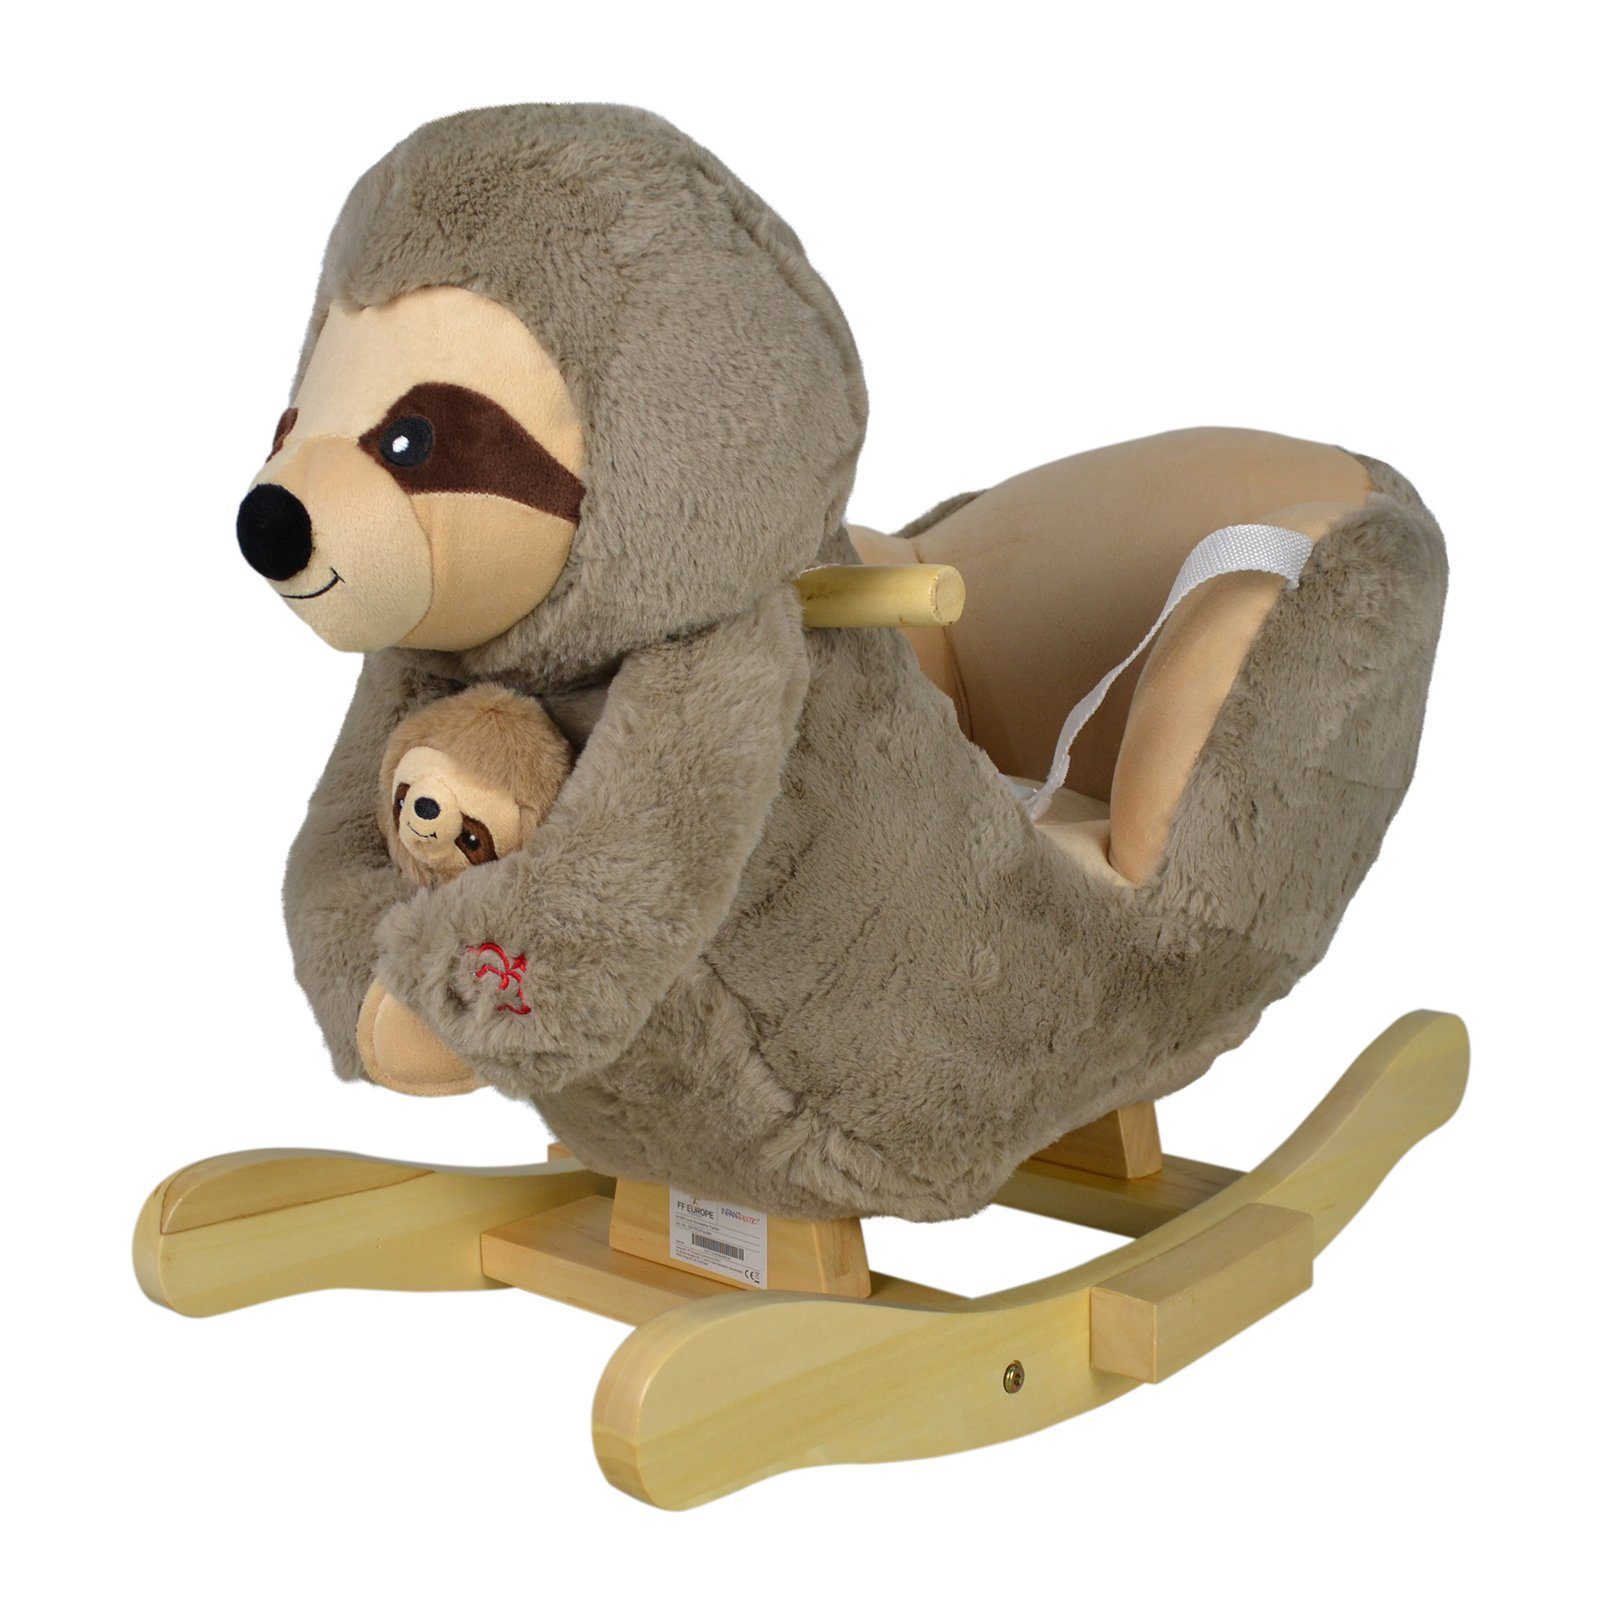 Infantastic Schaukeltier Schaukelspielzeug Babyschaukel Plüsch, mit Soundfunktion, aus Holz und Plüsch